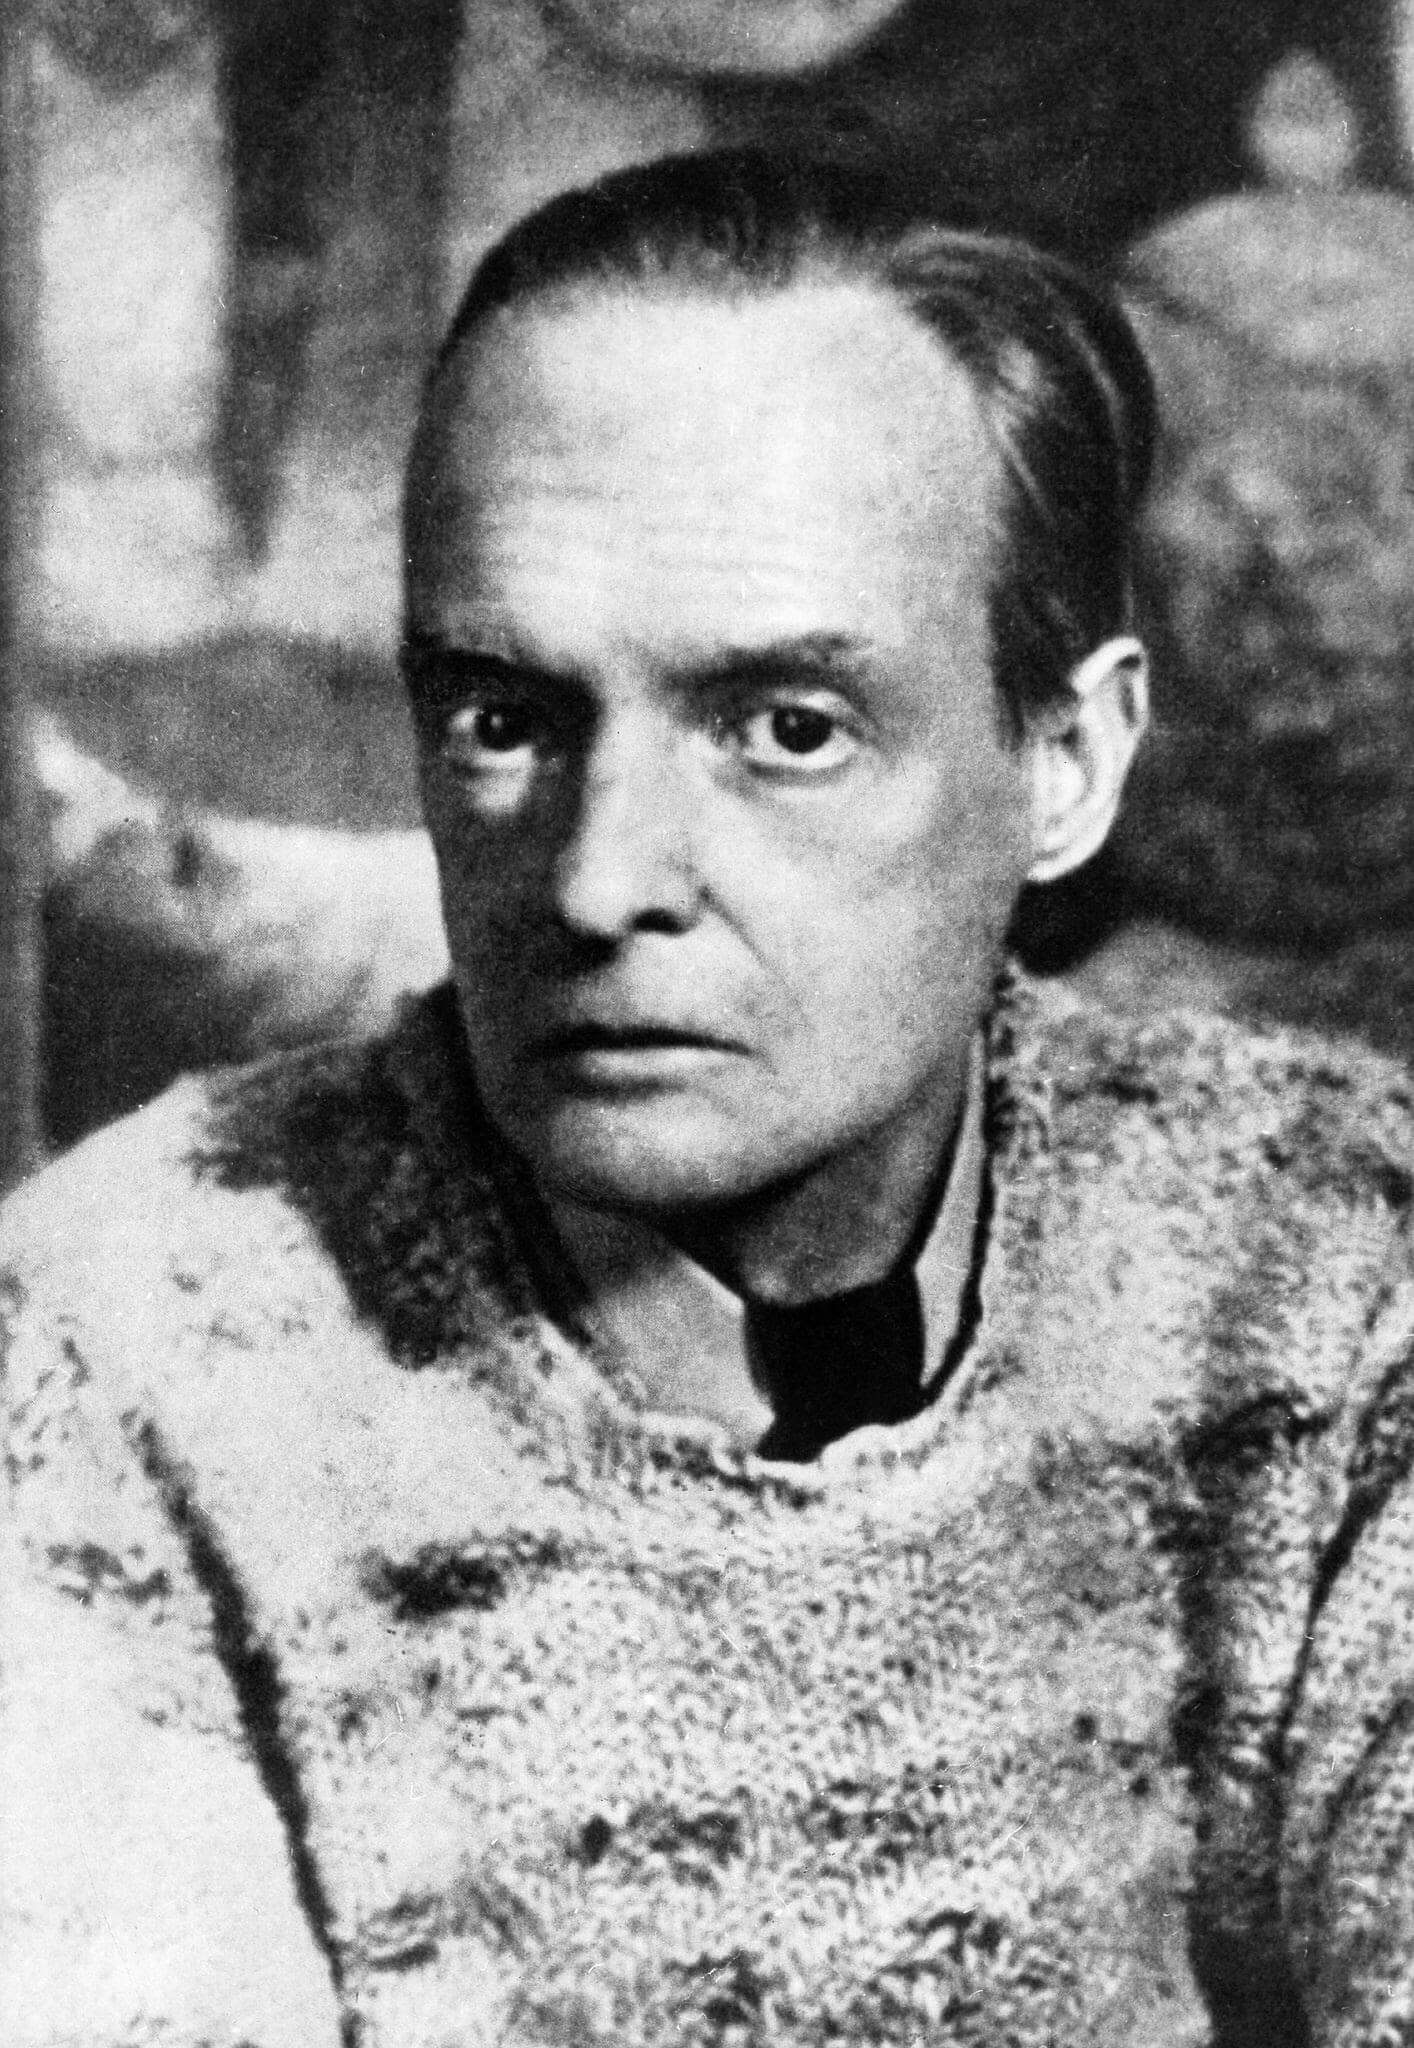 Paul Klee portrait